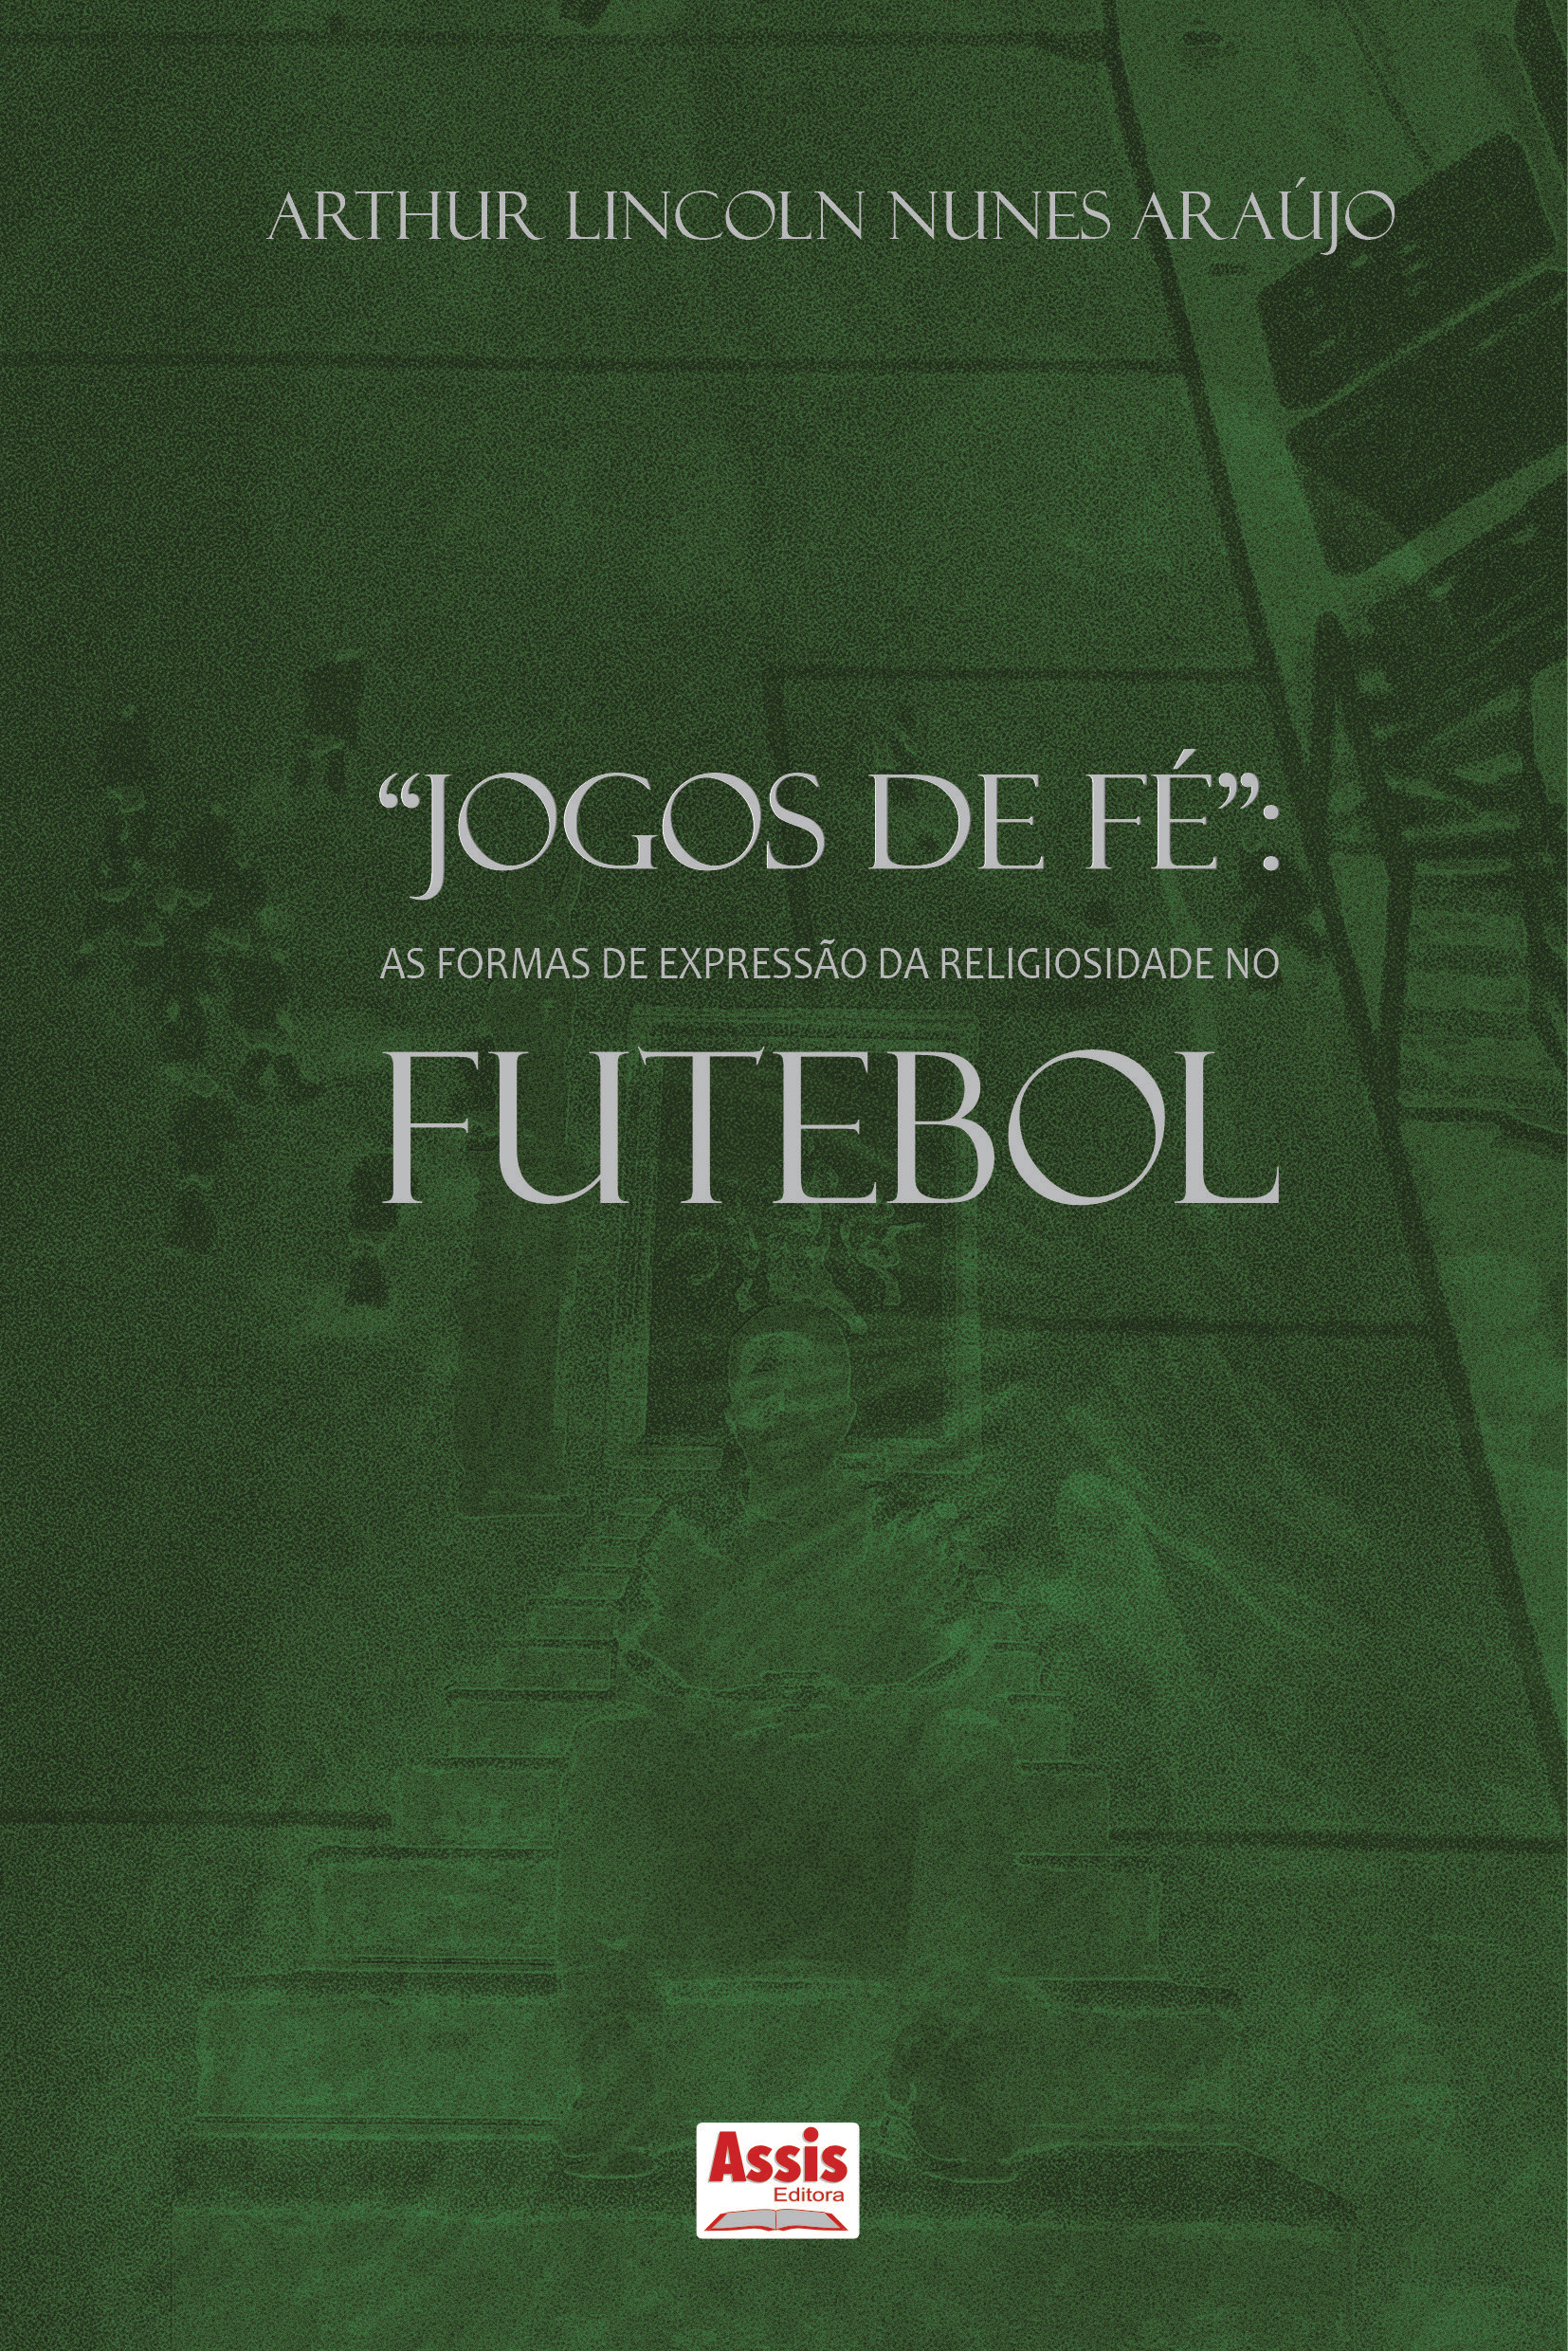 Jogos de fé”: as formas de expressão da religiosidade no futebol - Assis  Editora